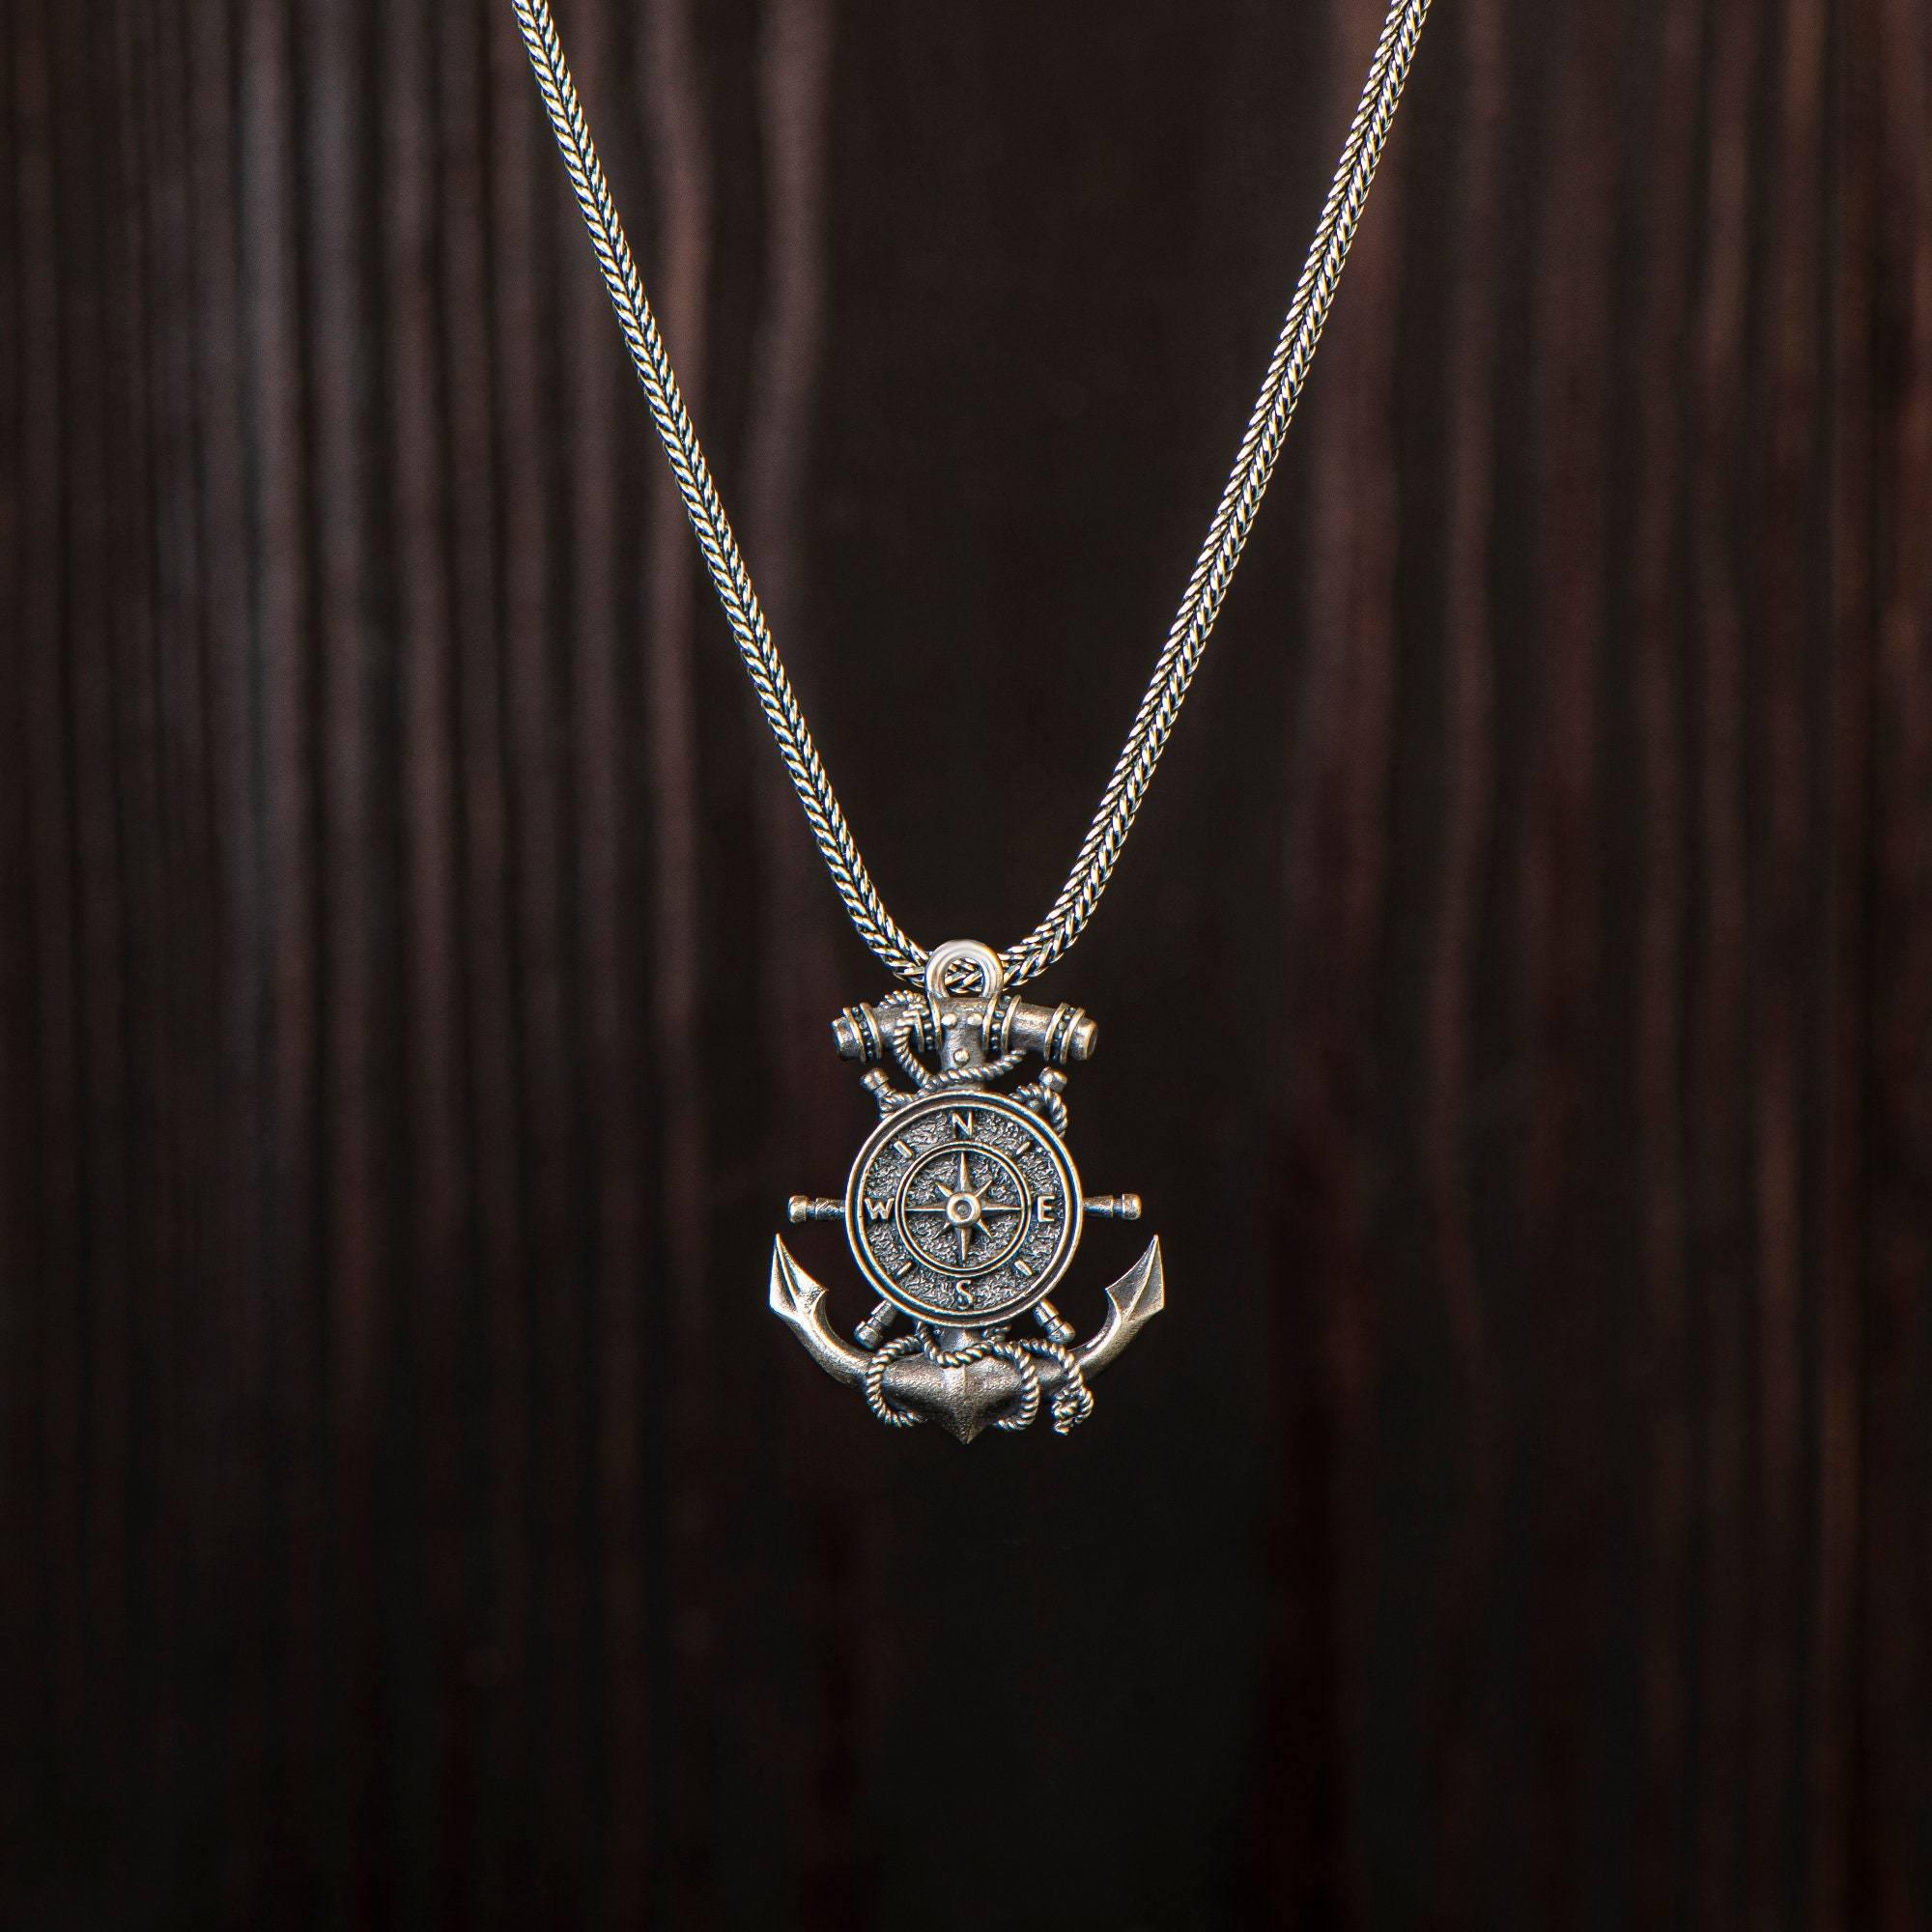 Silver Anchor Pendant with Compass, Oxidized Silver Nautical Anchor Necklace - OXO SILVER